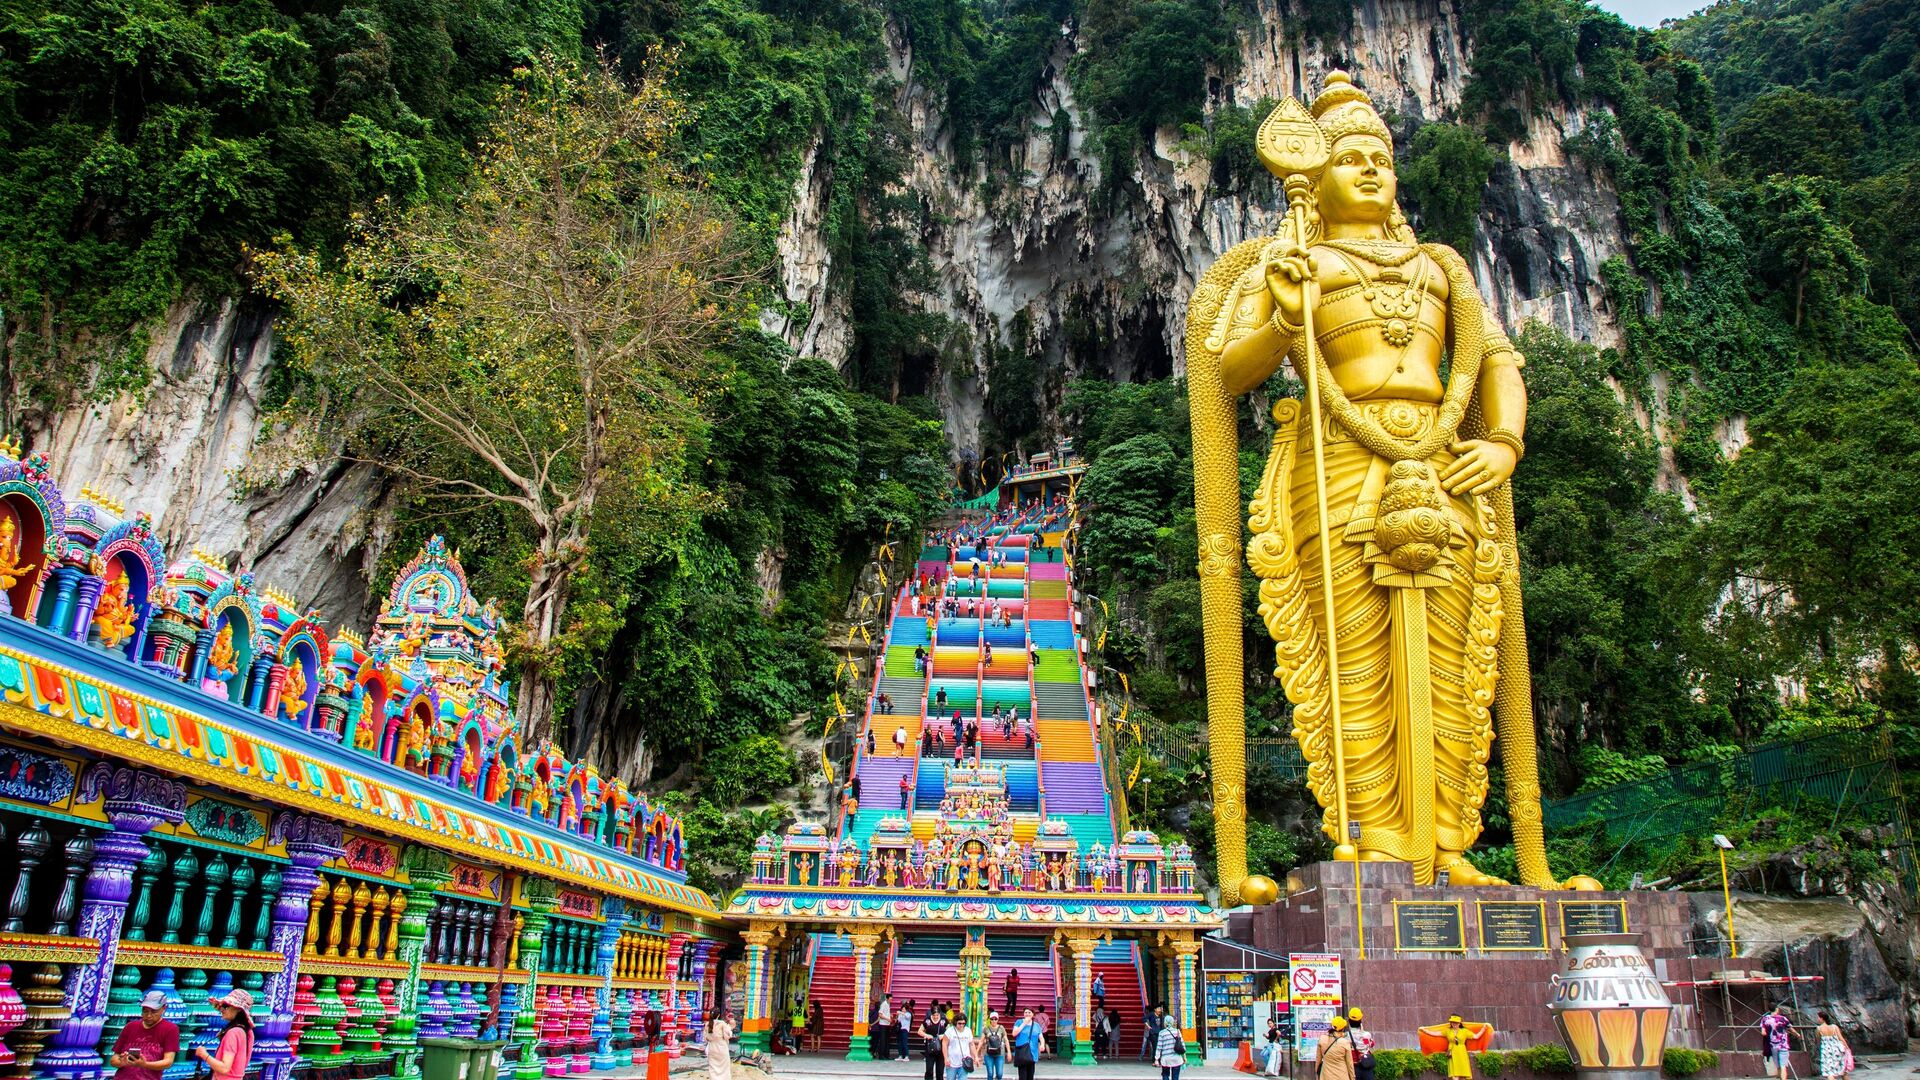 43-х метровая статуя бога Муругана возвышается возле лестницы к пещерам Бату в Куала-Лумпуре - РИА Новости, 1920, 21.11.2019